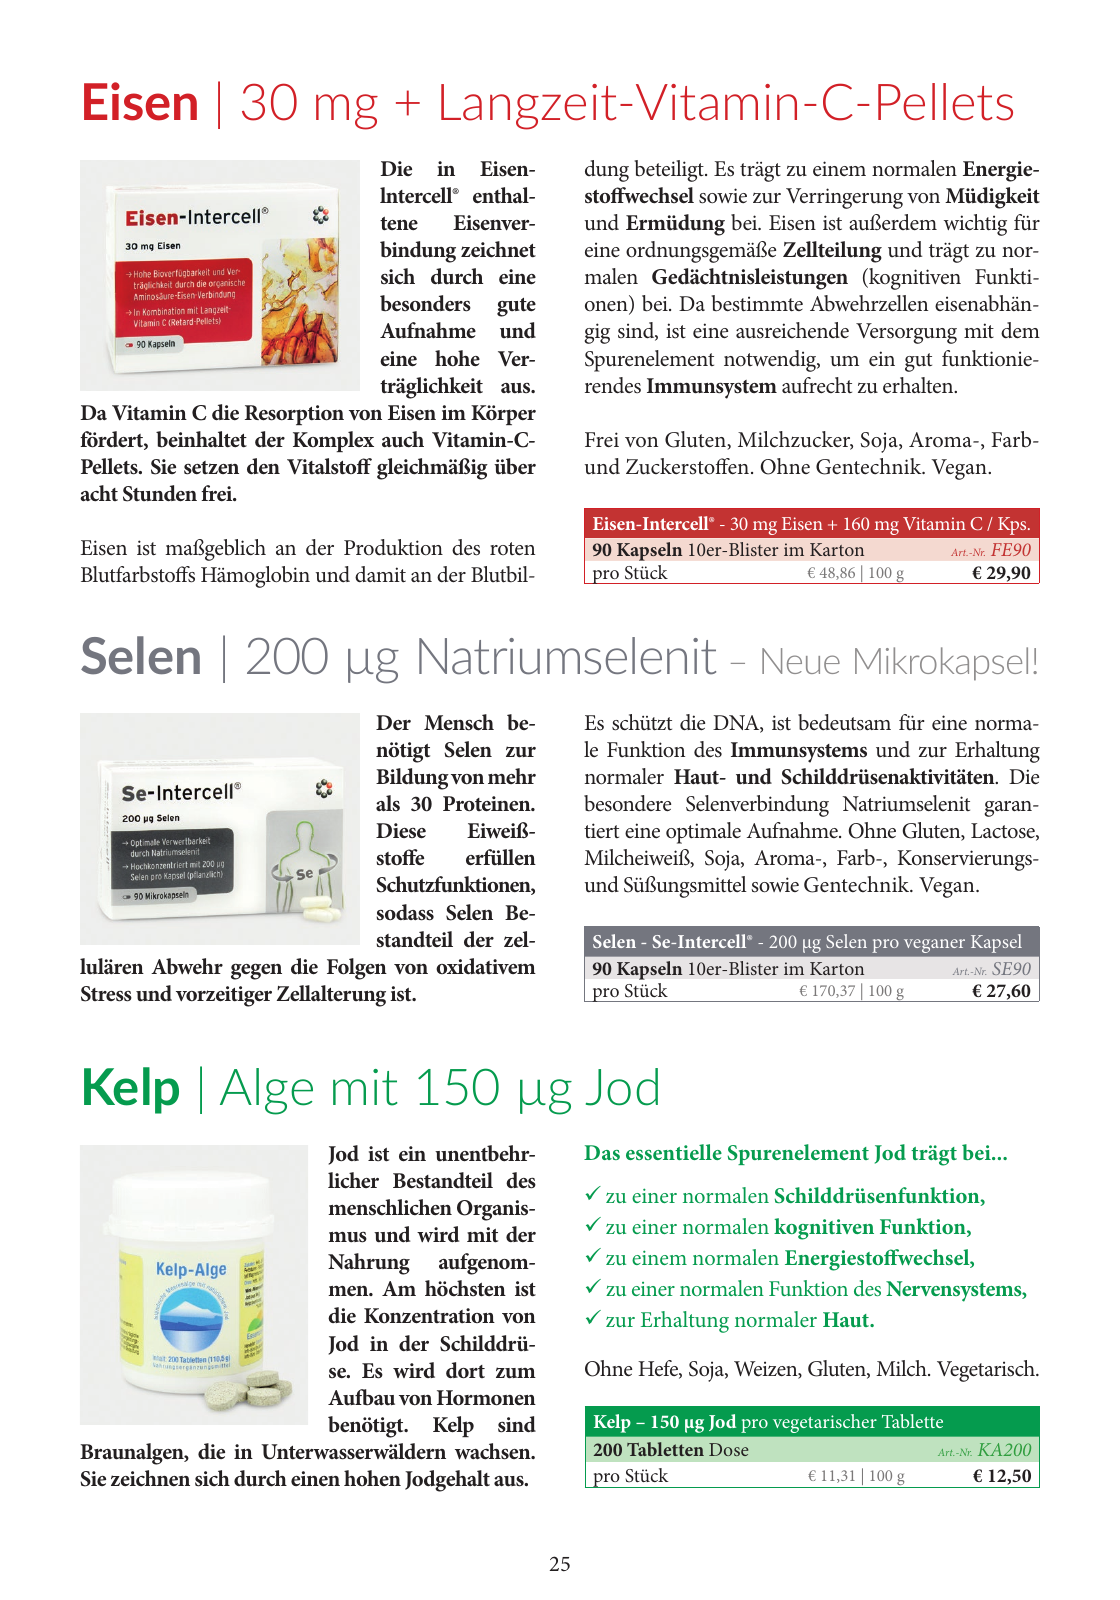 Vorschau Katalog 2019/2020 Seite 25